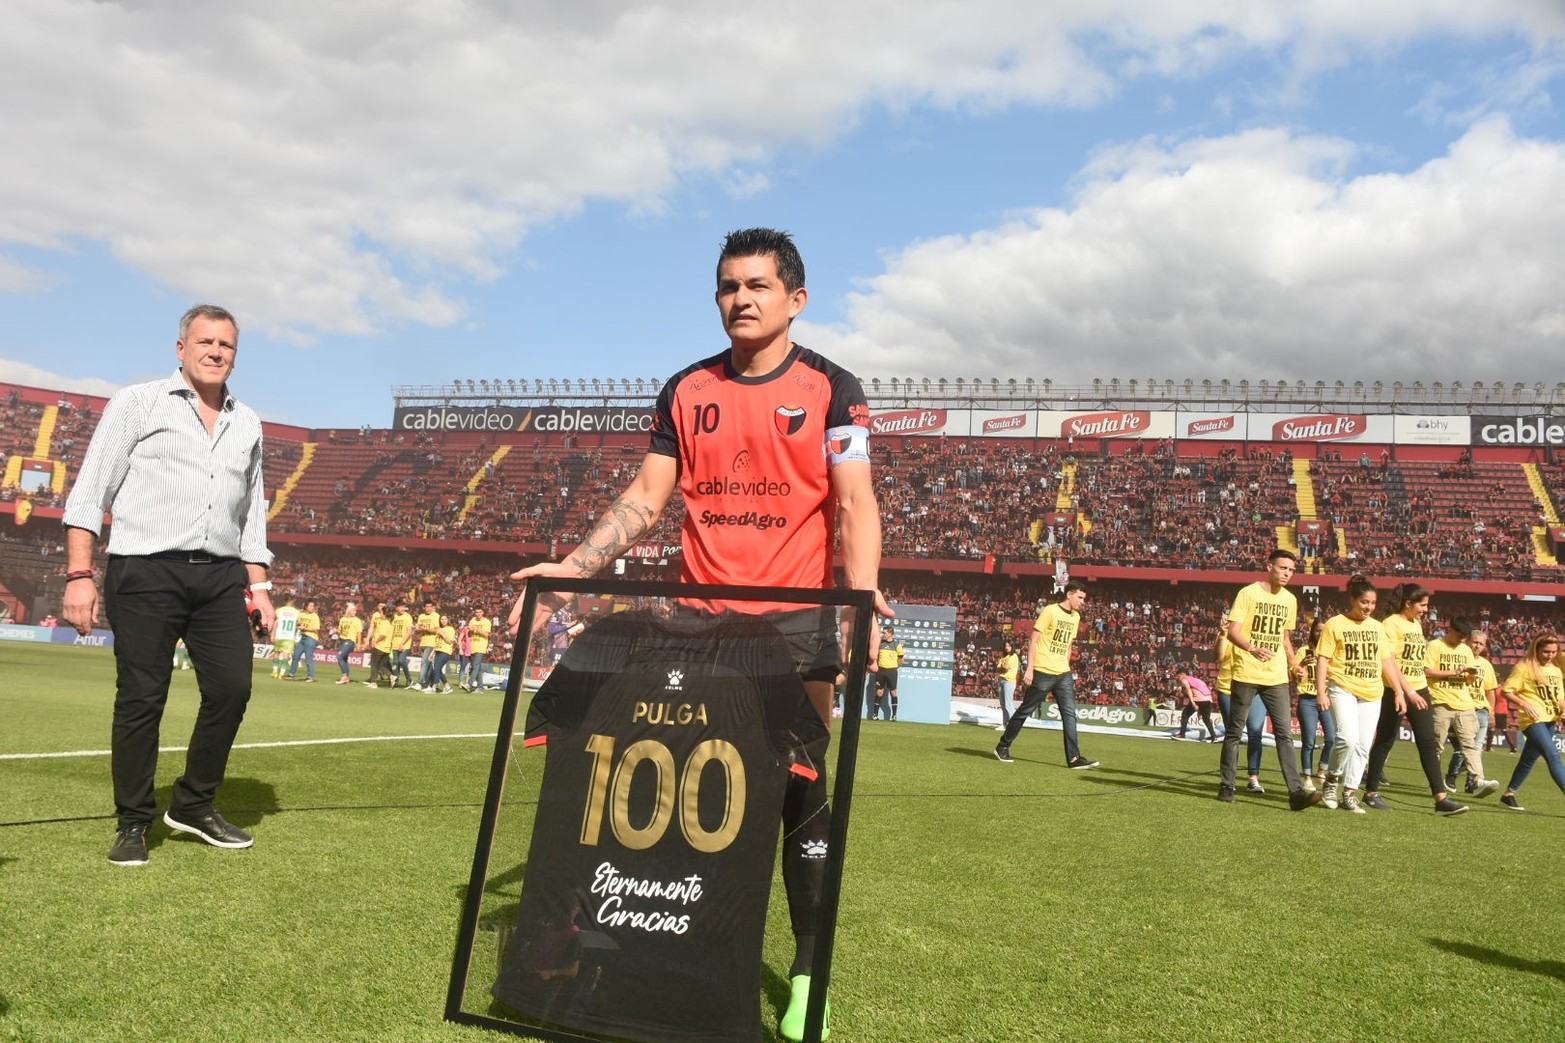 Colón - Defensa y Justicia, liga profesional. La previa del partido, "Pulga" Rodríguez festeja sus 100 partidos en Colón. 